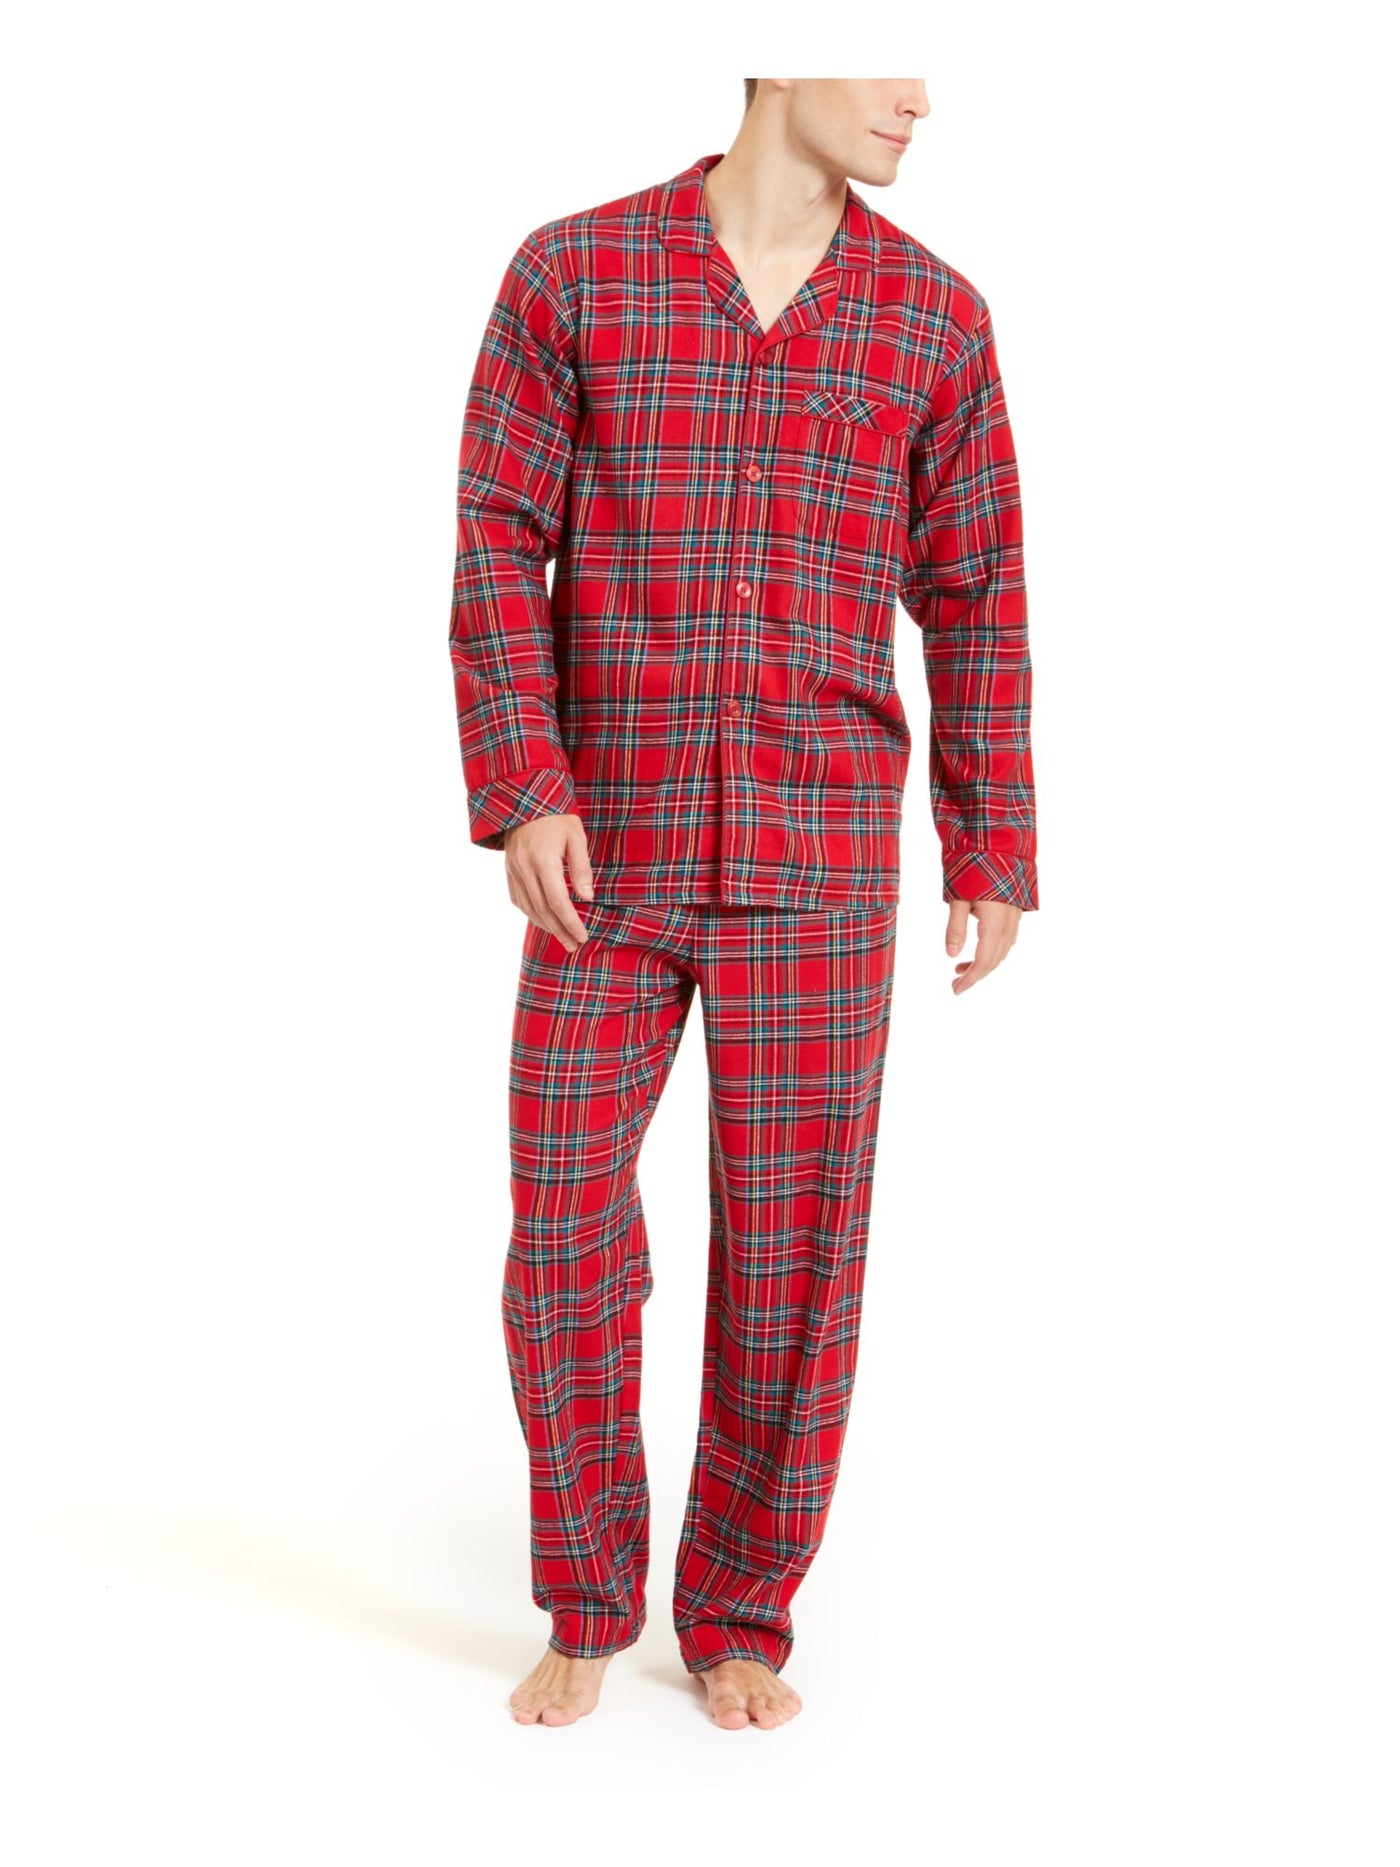 FAMILY PJs Intimates 2 Pack Red Set Pajamas M